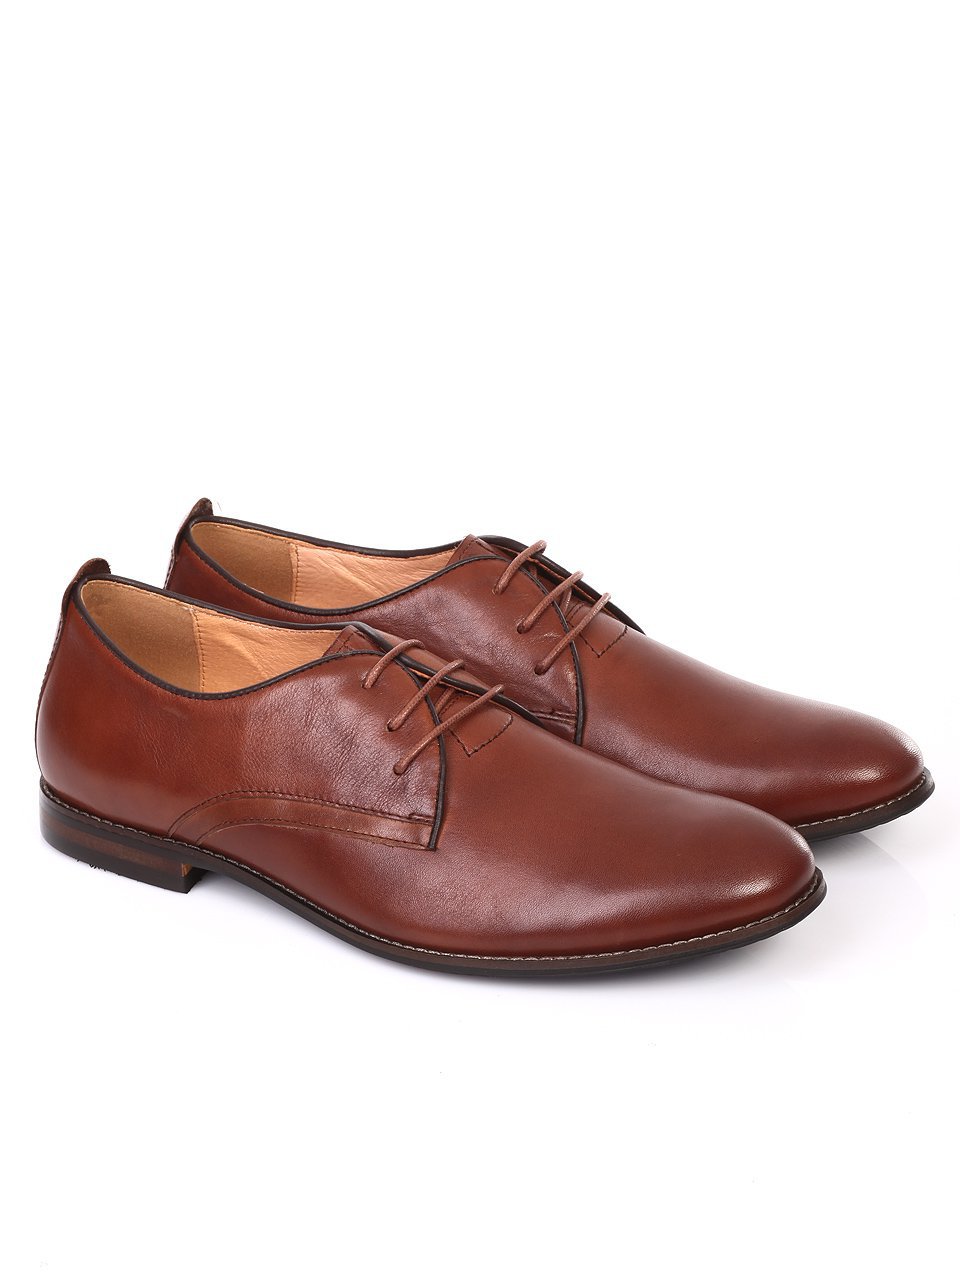 Елегантни мъжки обувки от естествена кожа 7N-18391 brown